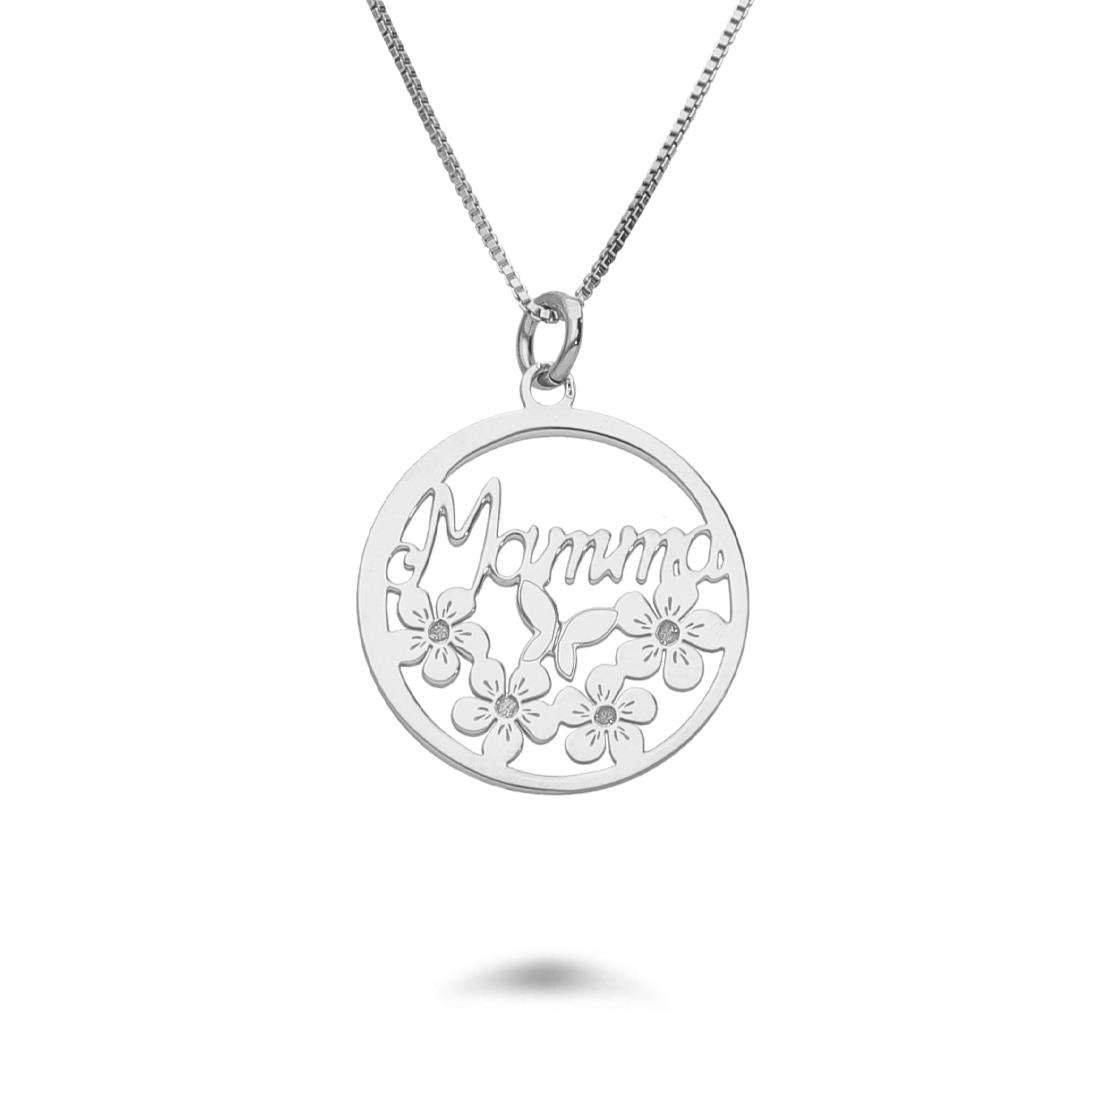 Rhodium-plated silver necklace with circle pendant - DESIDERI PREZIOSI